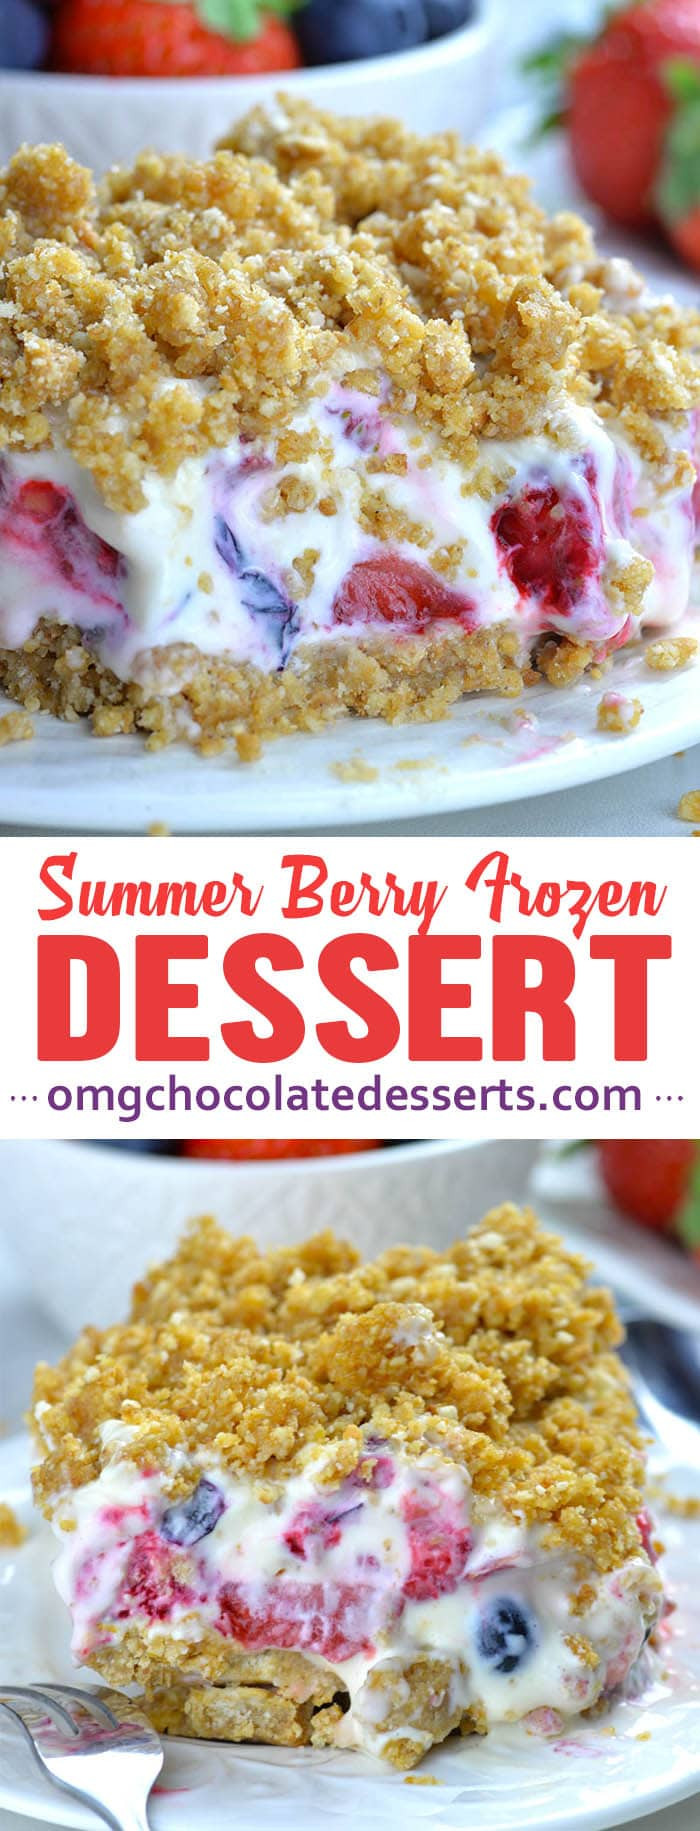 Refreshing Summer Desserts
 Summer Berry Frozen Dessert